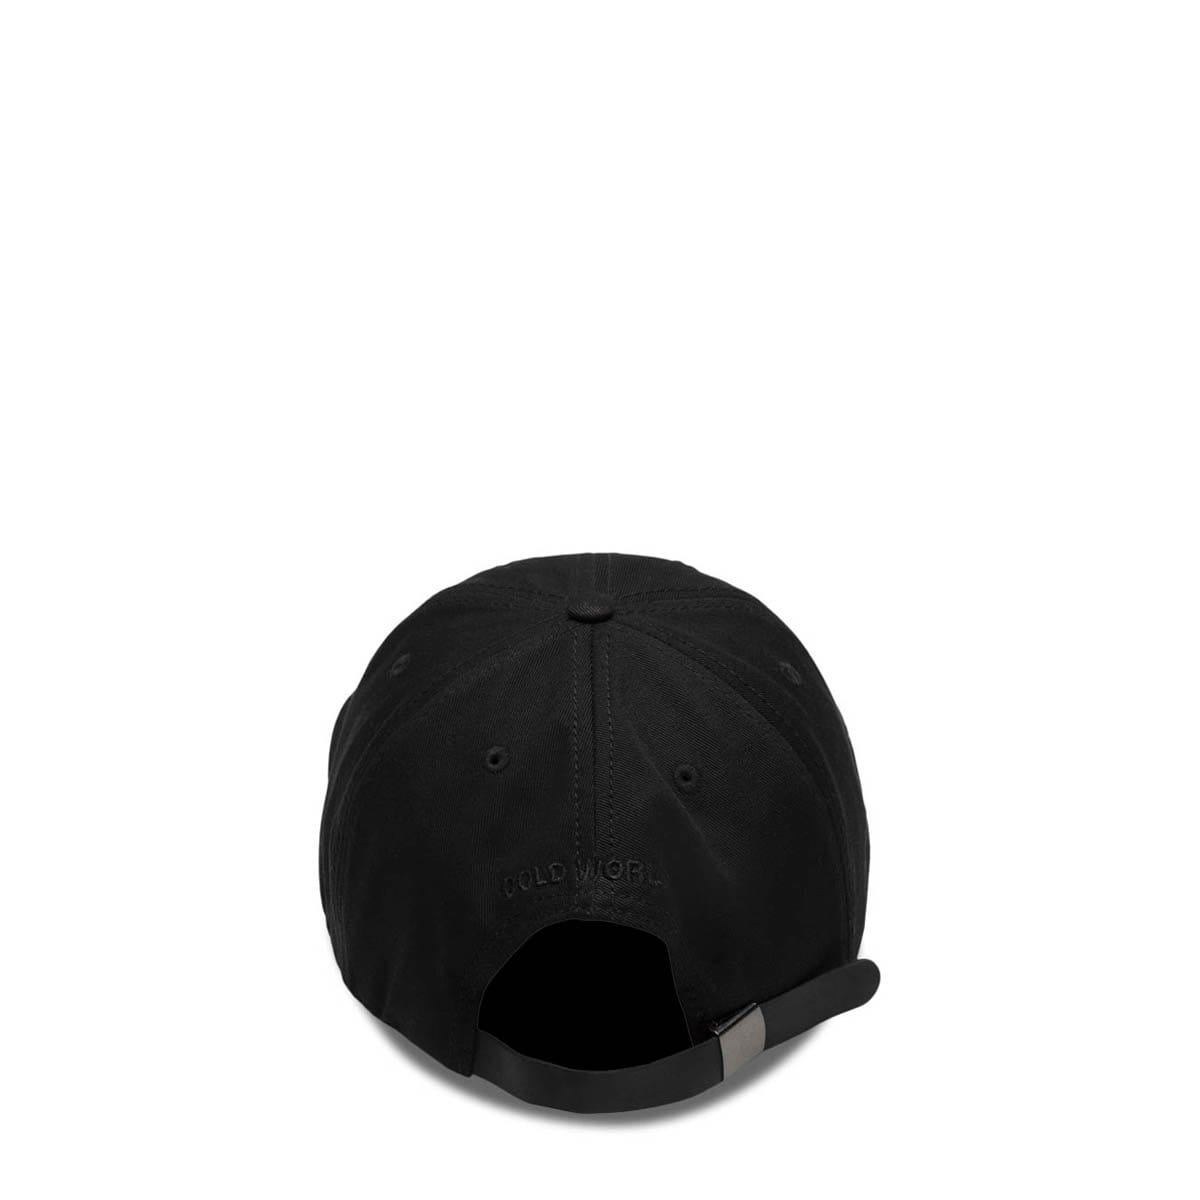 Cold World Frozen Goods Headwear BLACK / O/S LONG HAUL TRUCKING HAT